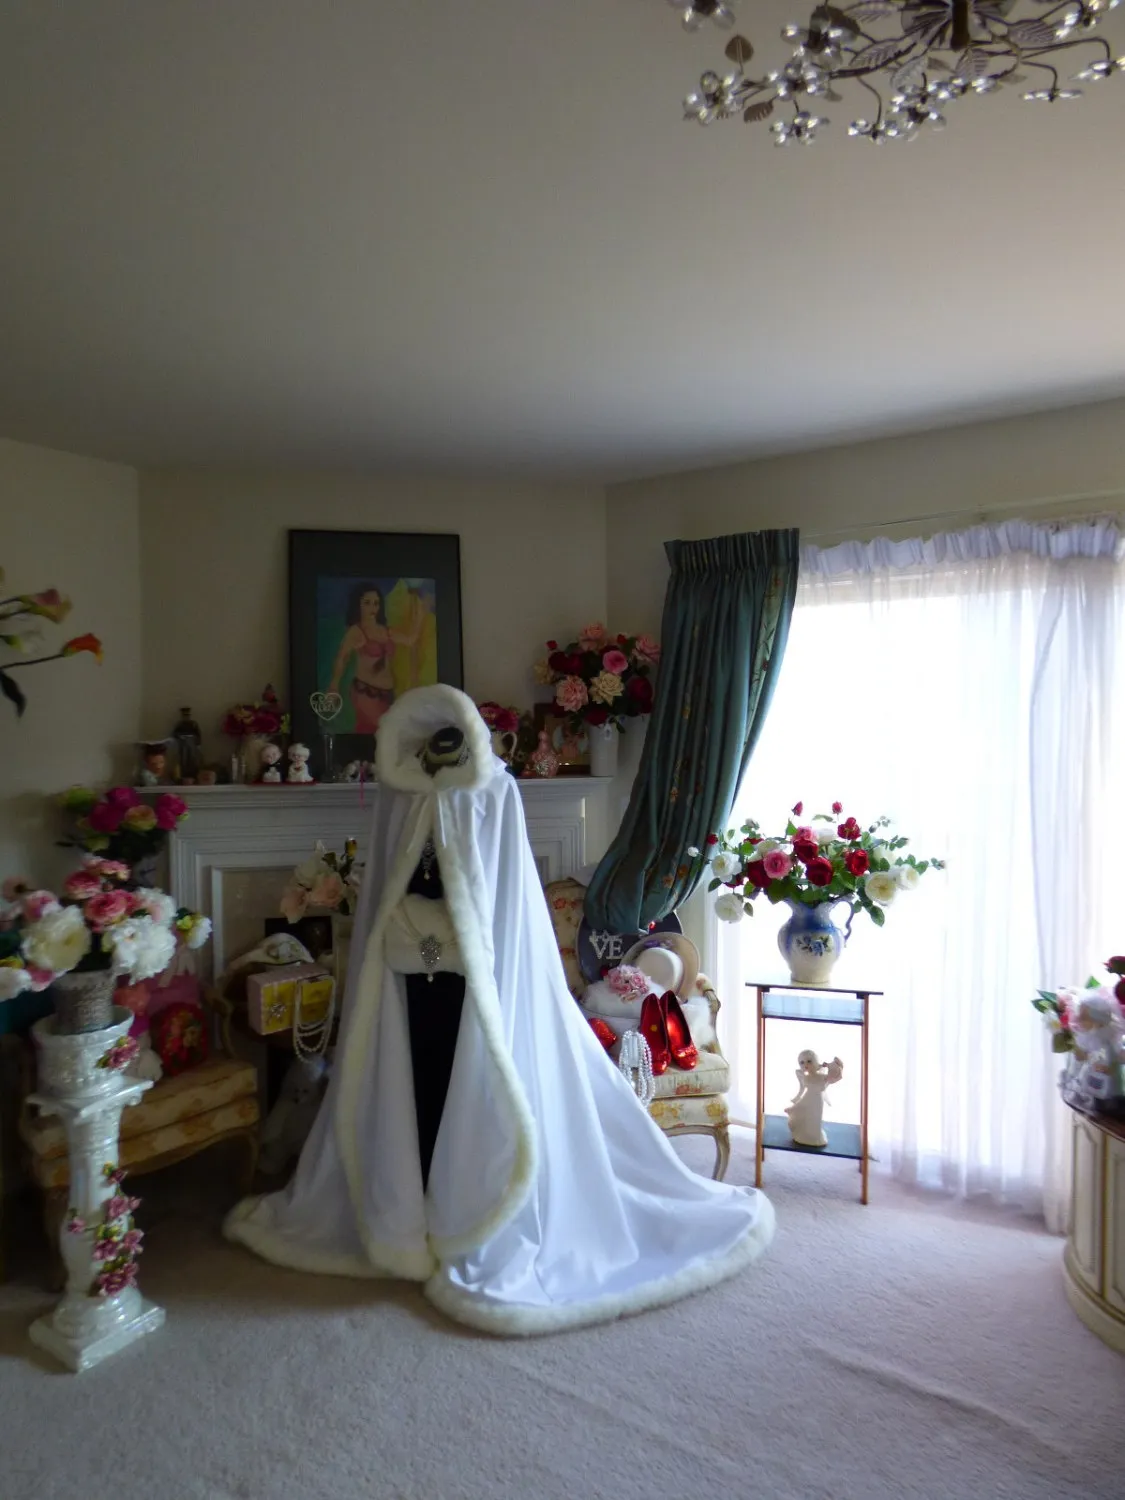 Classic Winter Bridal Cape 2019 52/67-cal Biały / Biały Satyna Z Faux Futro Wykończenia Ślubne Cloak Handmade